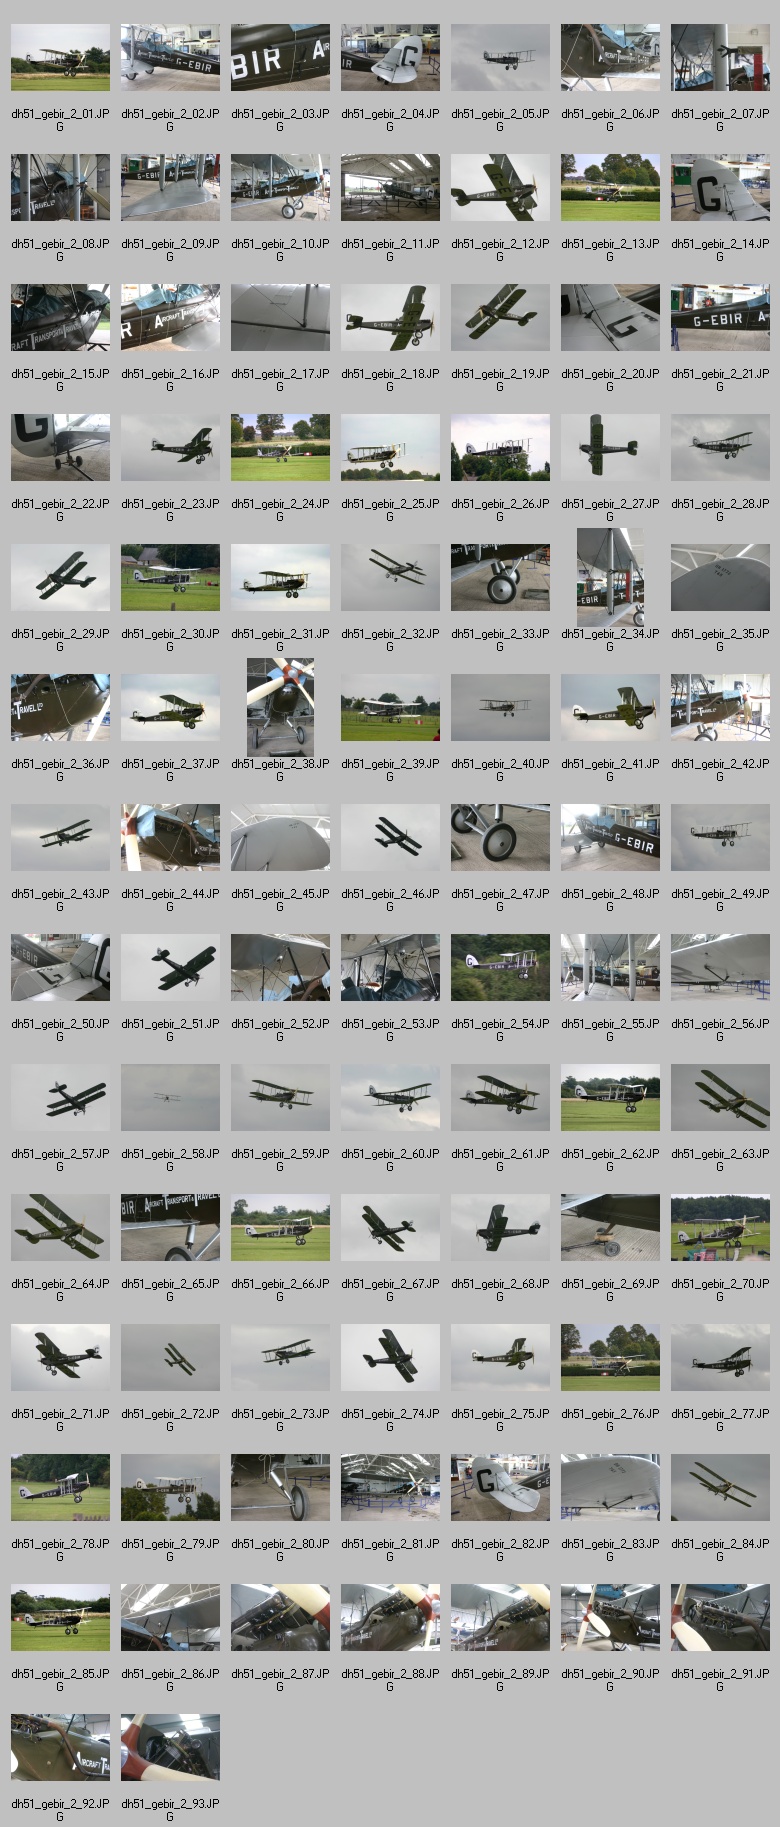 dh-51 G-EBIR thumbnails